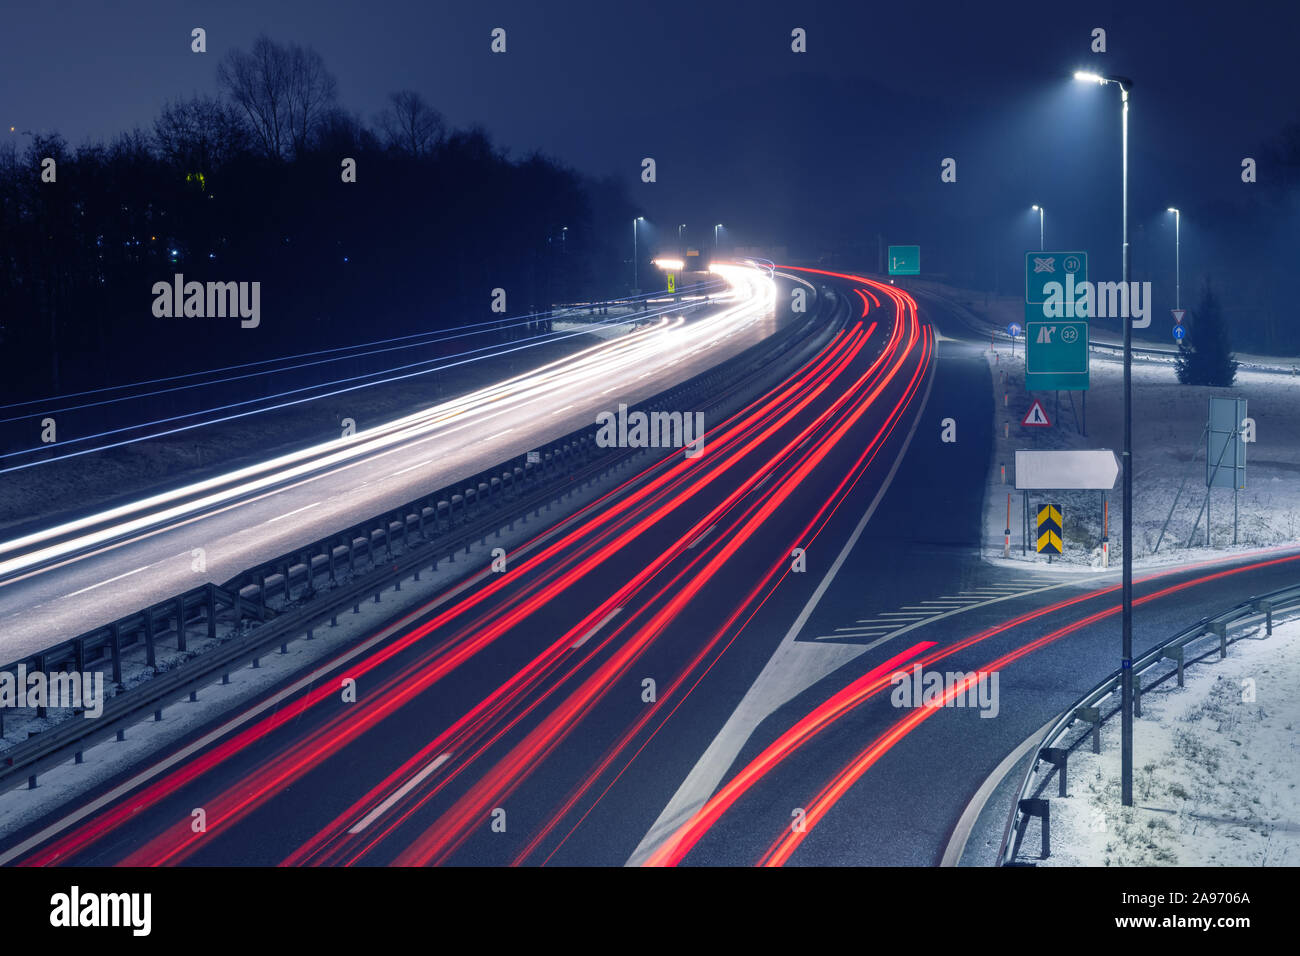 L'autoroute de nuit avec des sentiers lumineux de la lumière de trafic entrant et sortant. Les transports, l'urbanisme, de la circulation et de l'infrastructure des concepts. Banque D'Images